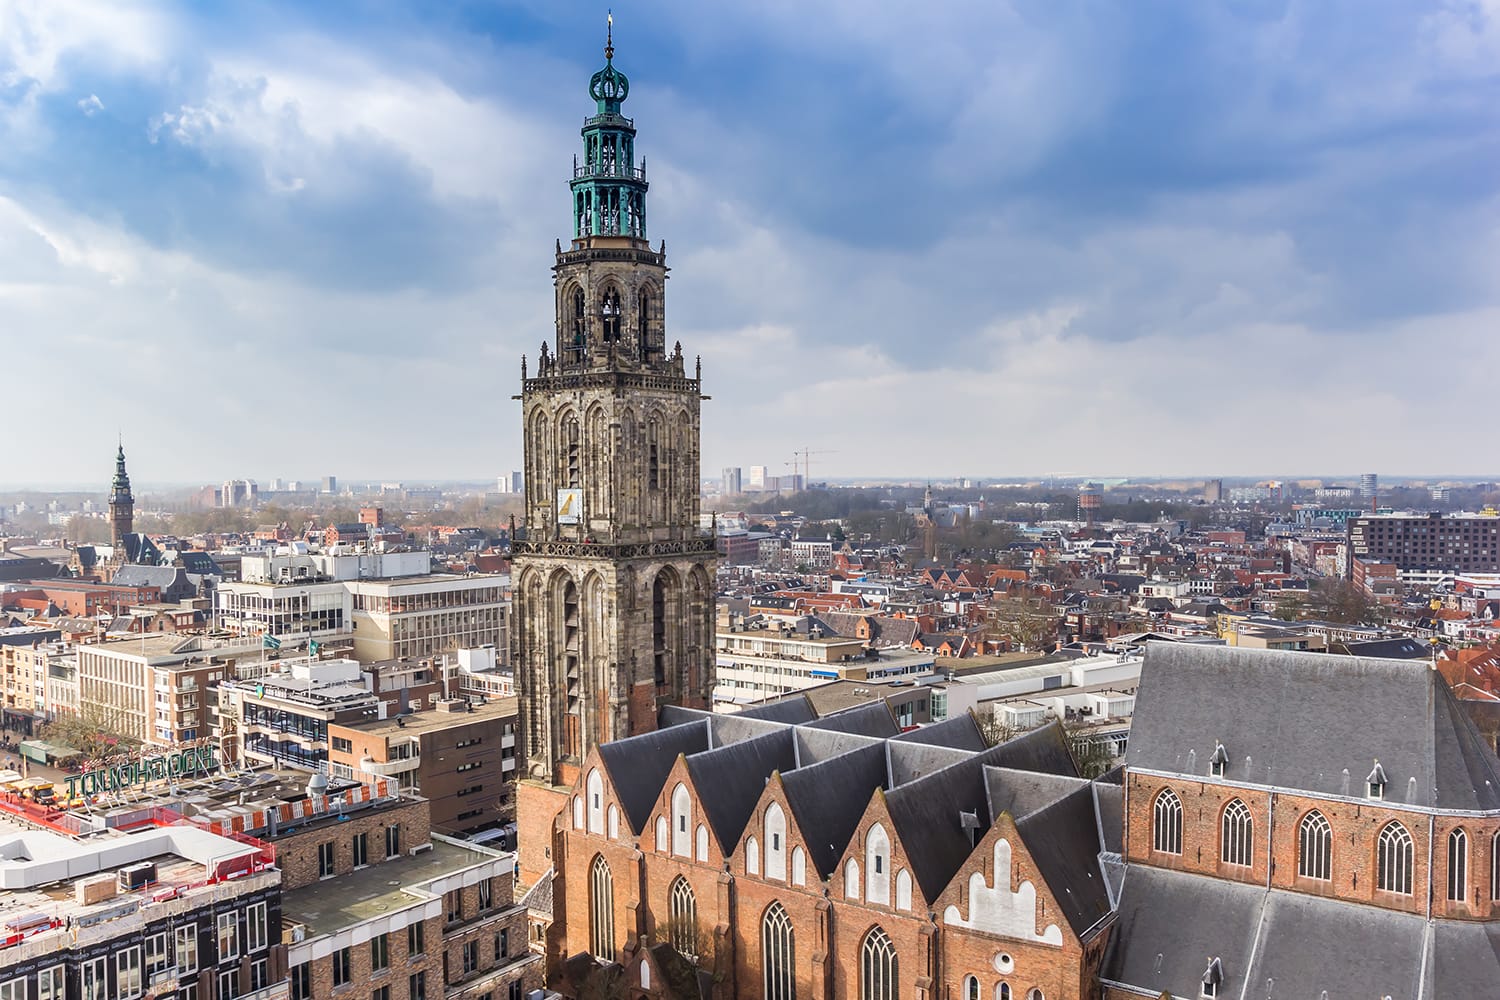 Ιστορική εκκλησία Martini που δεσπόζει στον ορίζοντα του Groningen, Κάτω Χώρες